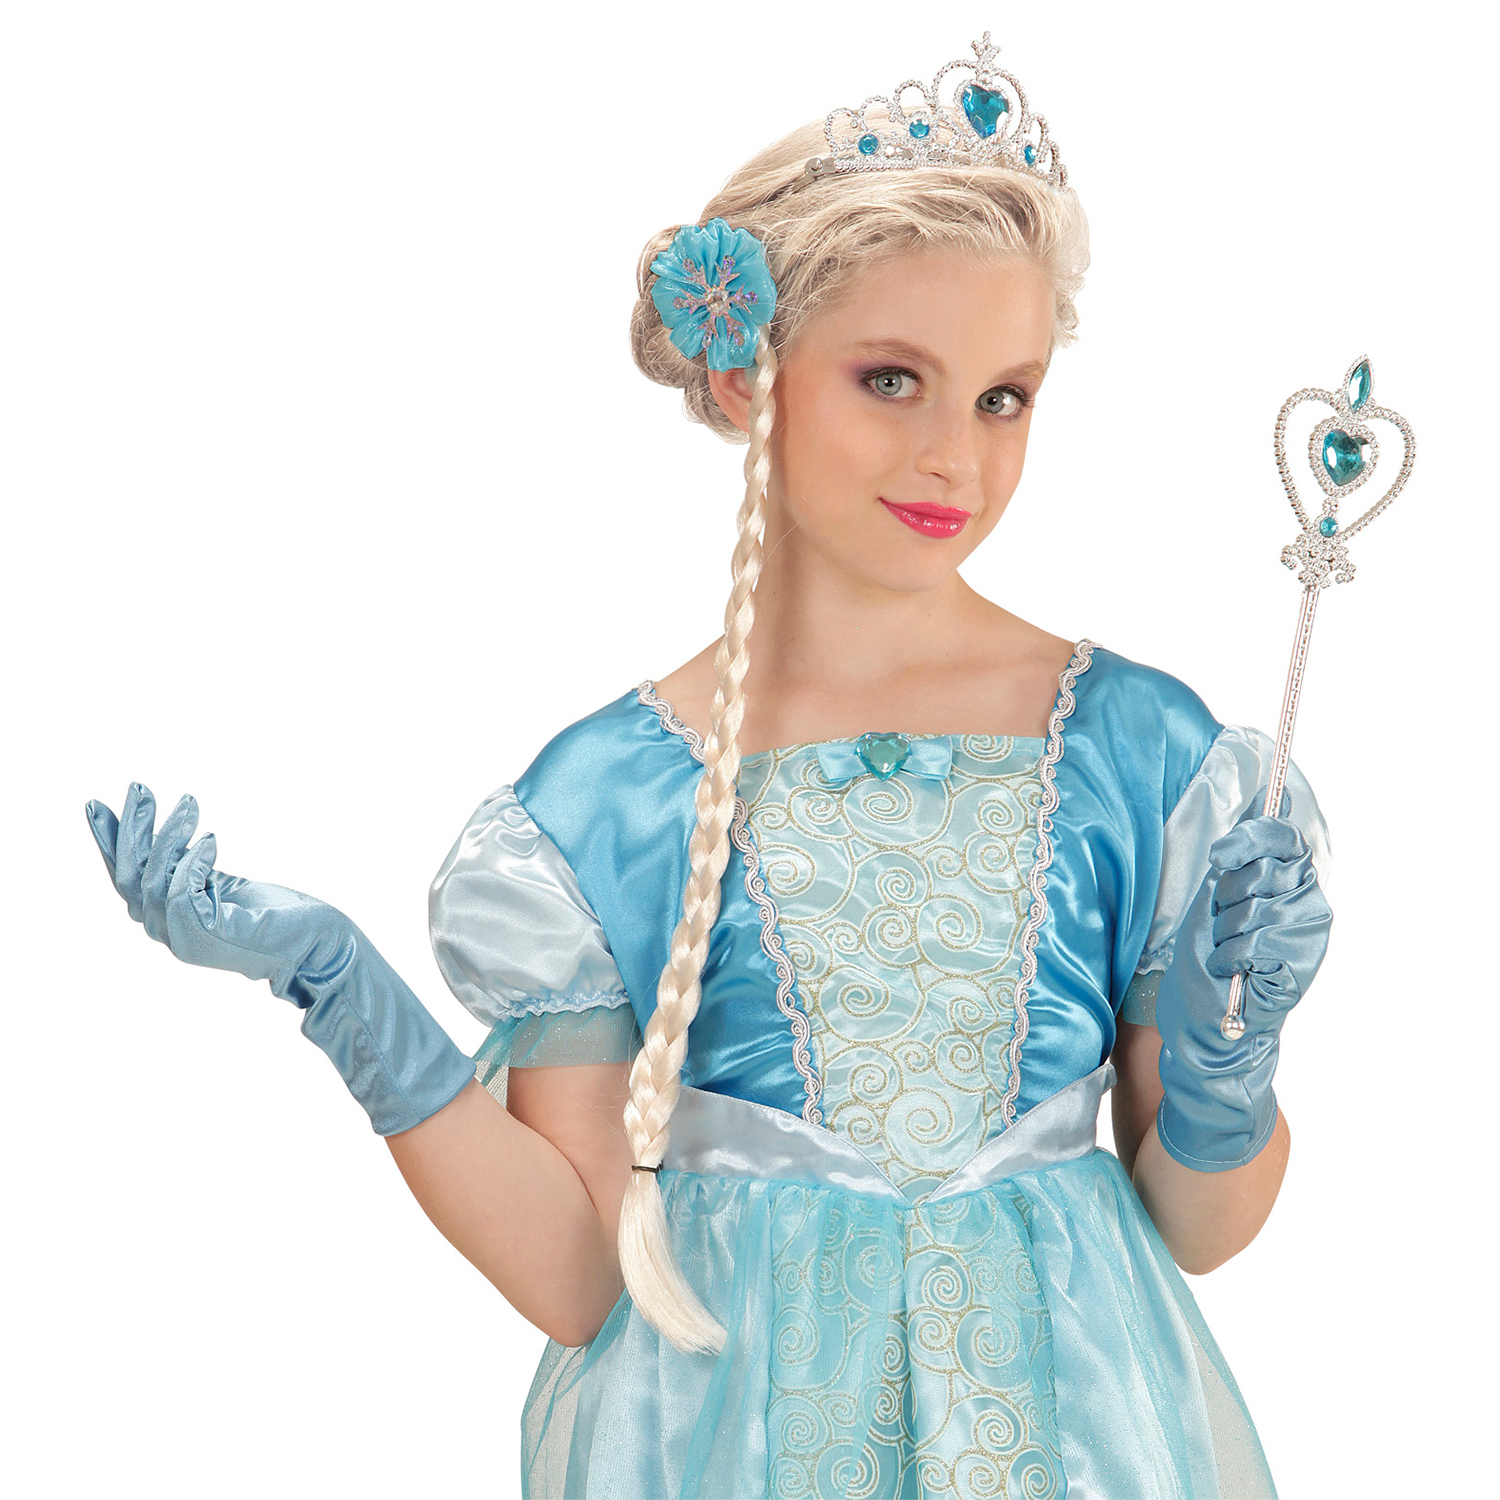 NEU Kinder-Set Eis-Prinzessin, Blau mit Krönchen / Tiara, Zopf, Handschuhen und Prinzessinnenstab Bild 2